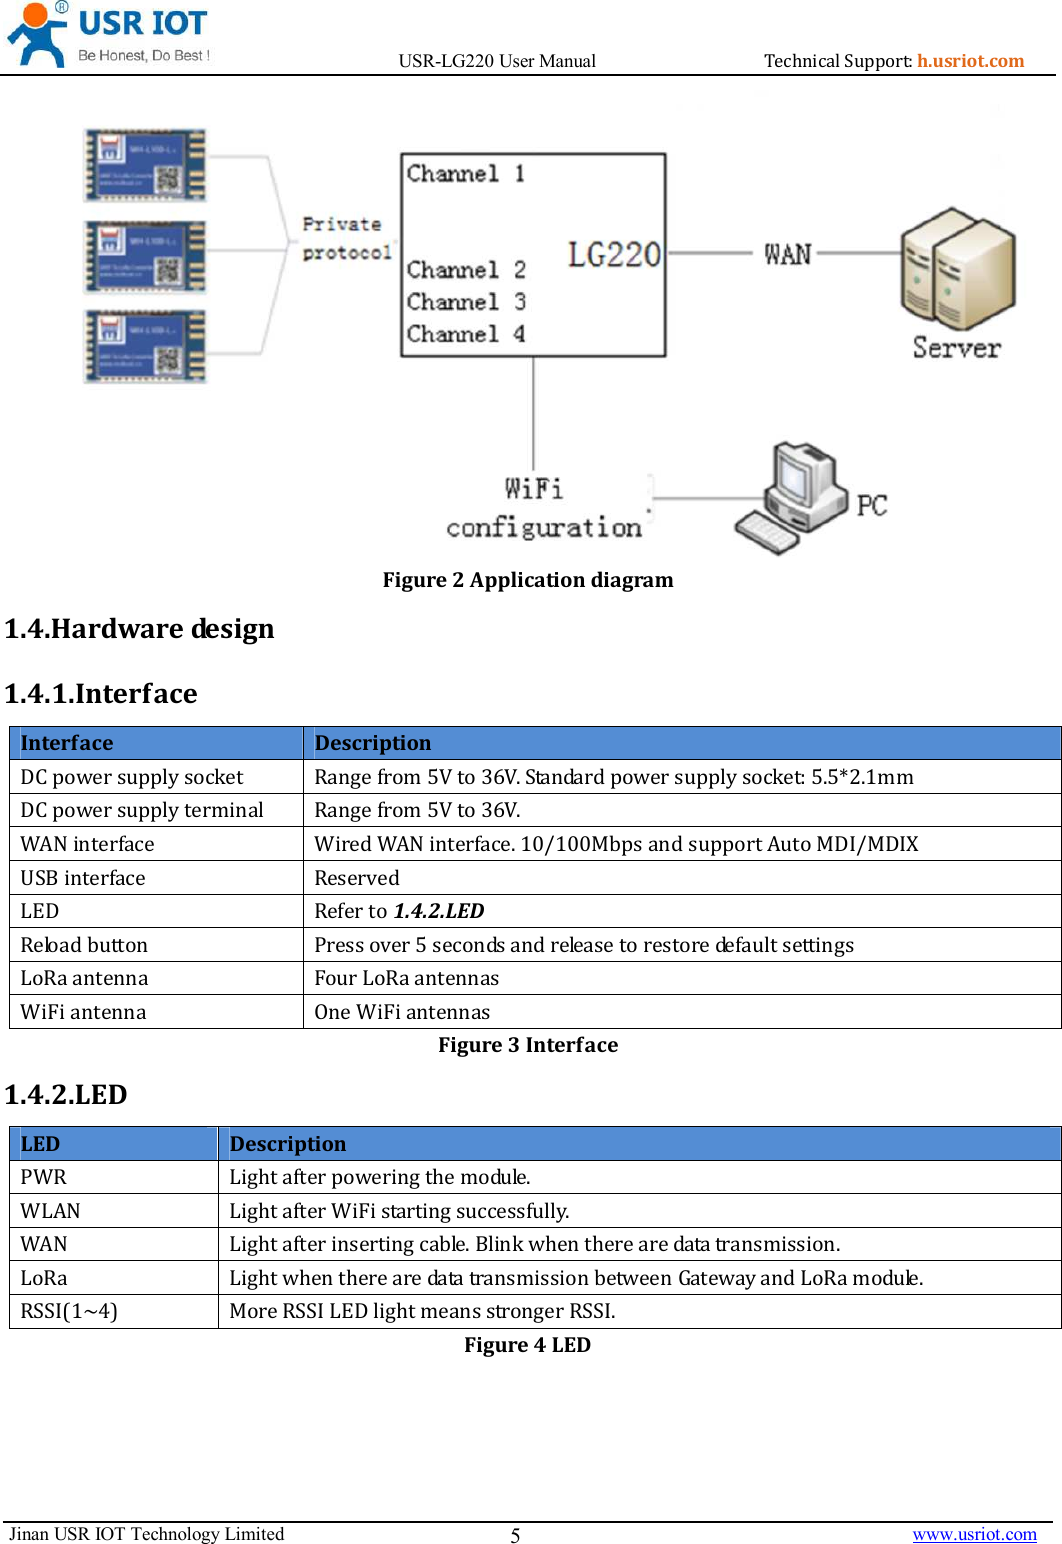                                       USR-LG220 User Manual                                    h.usriot.com    Jinan USR IOT Technology Limited                                                                                                                                      www.usriot.com 5  Figure 2 Application diagram 1.4.Hardware design 1.4.1.Interface Interface  Description ,1(4. #*&quot;5$  (4.55E&quot;&quot;,1(4&quot;  #*&quot;5$-%/* - -%/*96 %,)9,)A!* 0 +, *1.4.2.LED 6 05   *# - 3-Figure 3 Interface 1.4.2.LED LED  Description - #*(#&quot; -%/ #*-#*4-%/ #*#6!.( &quot; #( &quot;6((4 &quot; )8&gt;&amp;: )+,#&quot;#)Figure 4 LED   